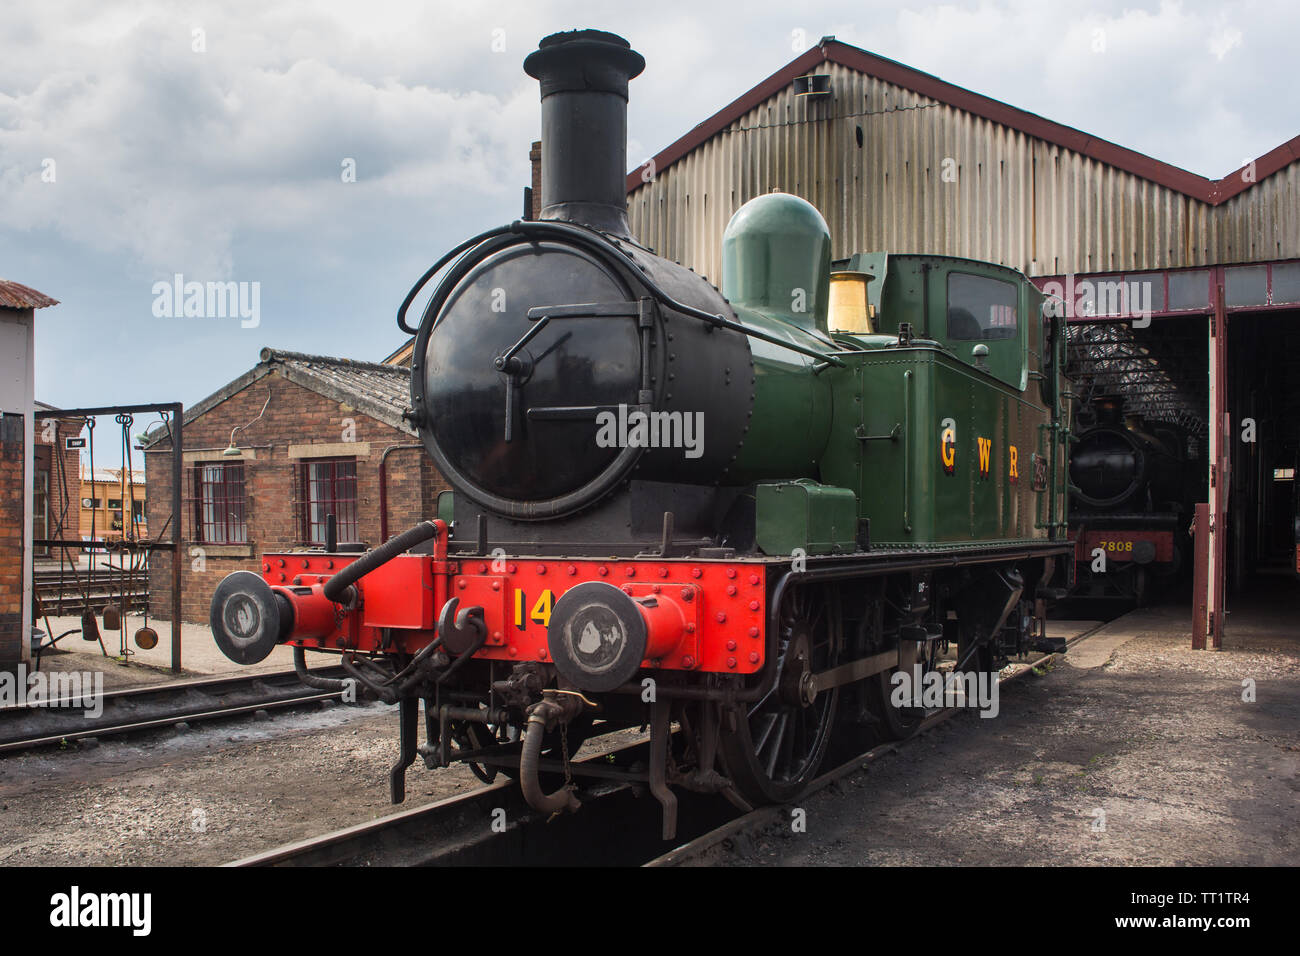 GWR verde 1450 vapore locomotore ferroviario motore (1400 classe 0-4-2T costruito 1935 a Swindon opere) fermi dal capannone, Didcot Railway Centre, Oxfordshire. Foto Stock